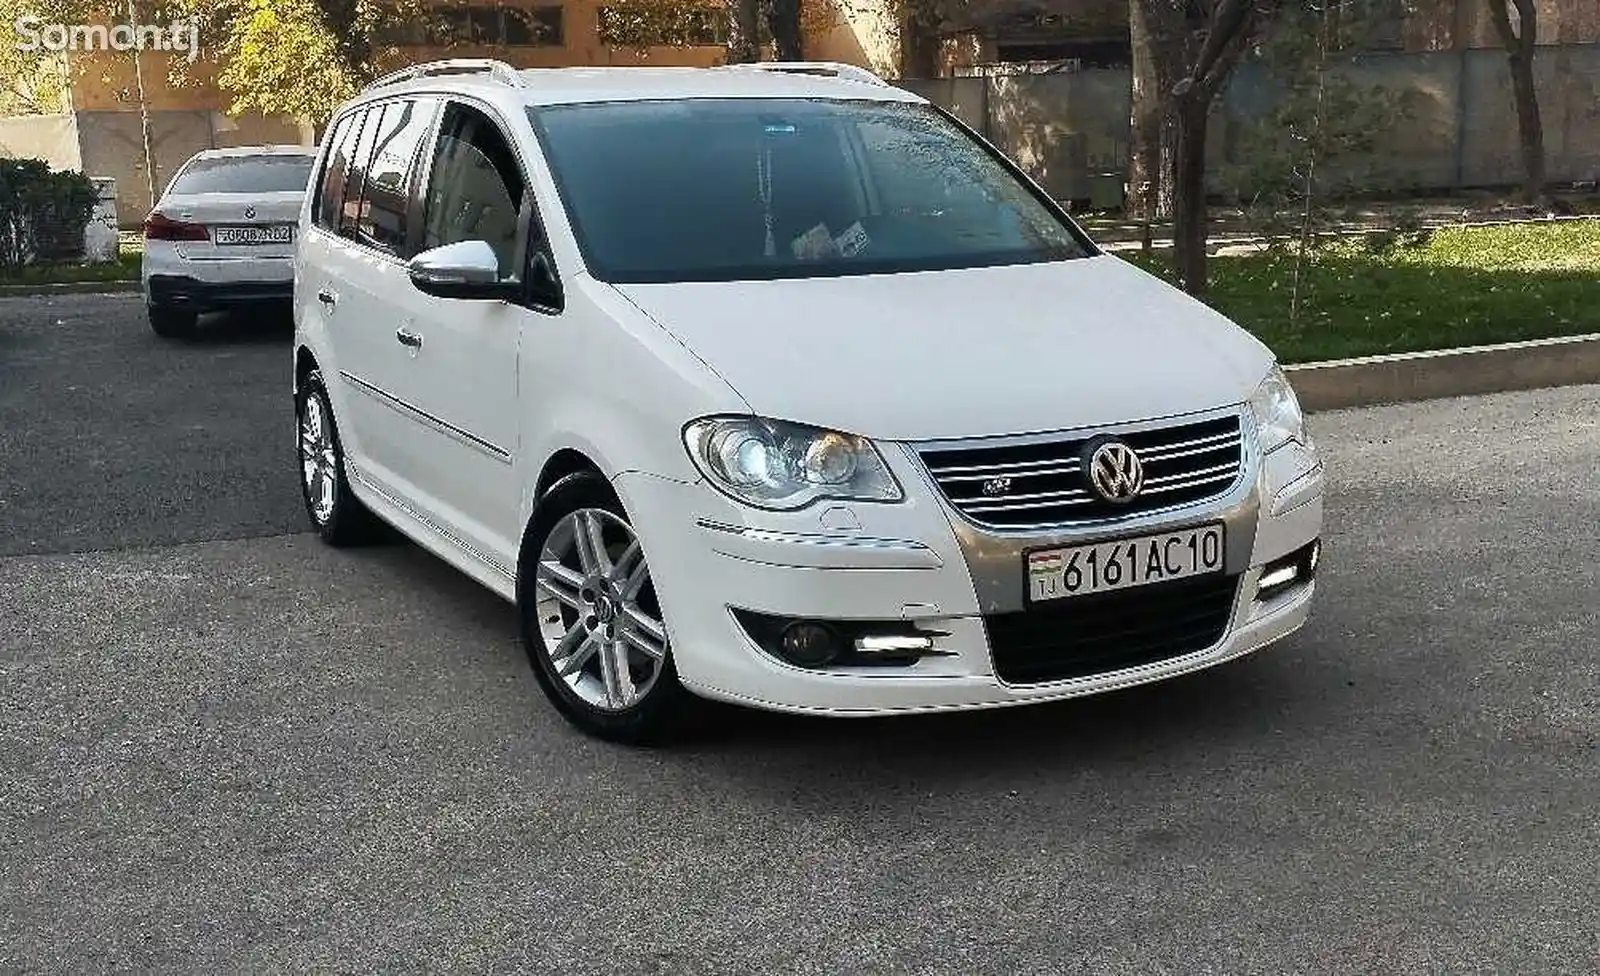 Volkswagen Touran, 2008-2